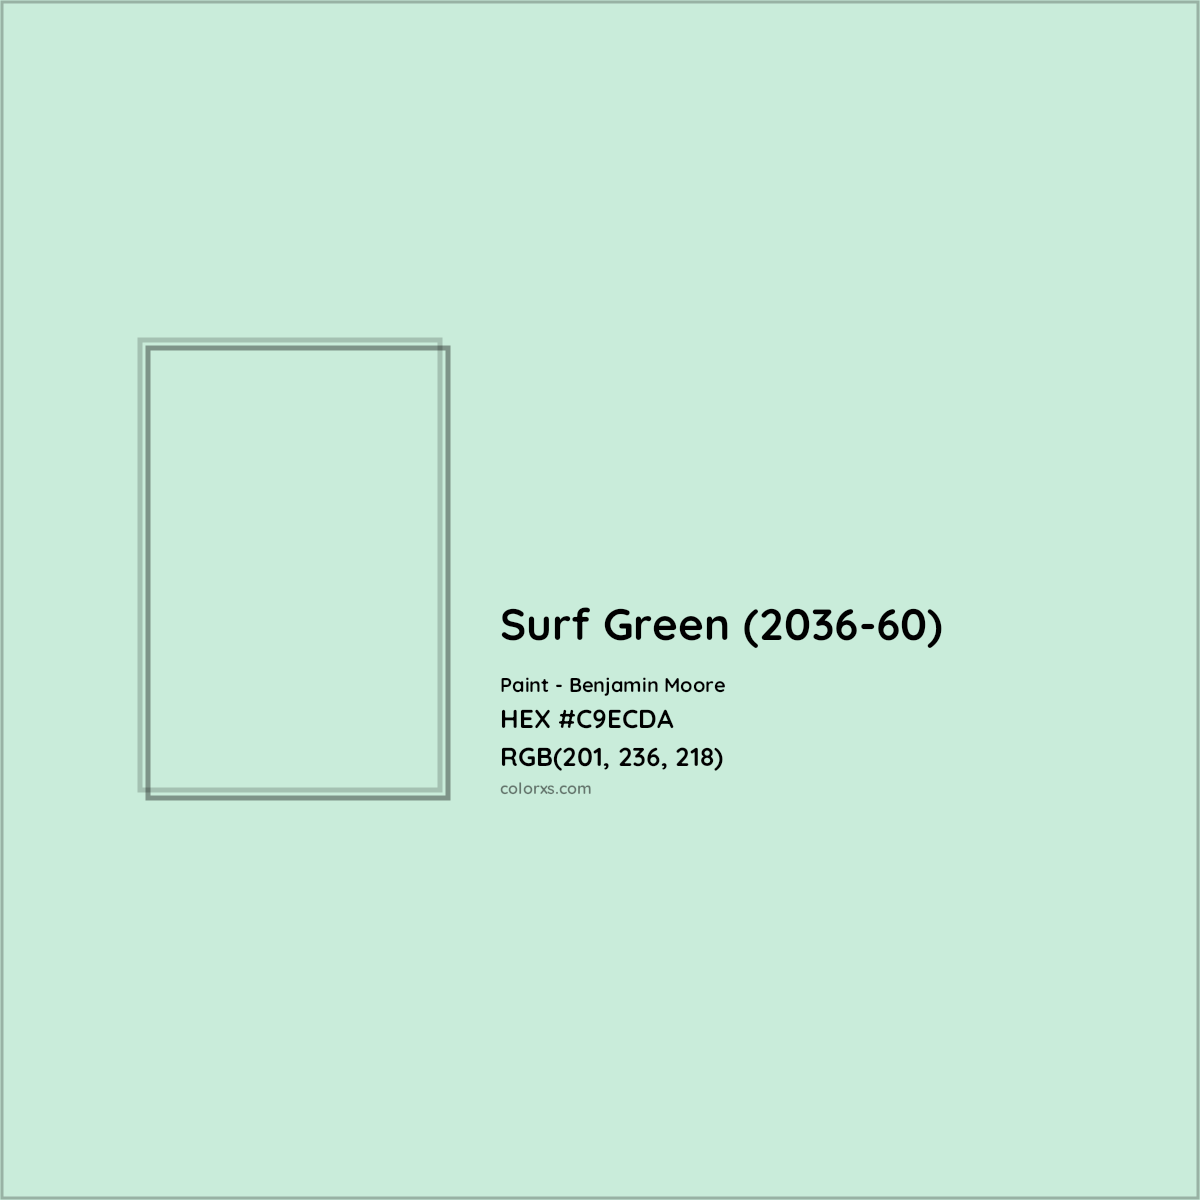 HEX #C9ECDA Surf Green (2036-60) Paint Benjamin Moore - Color Code